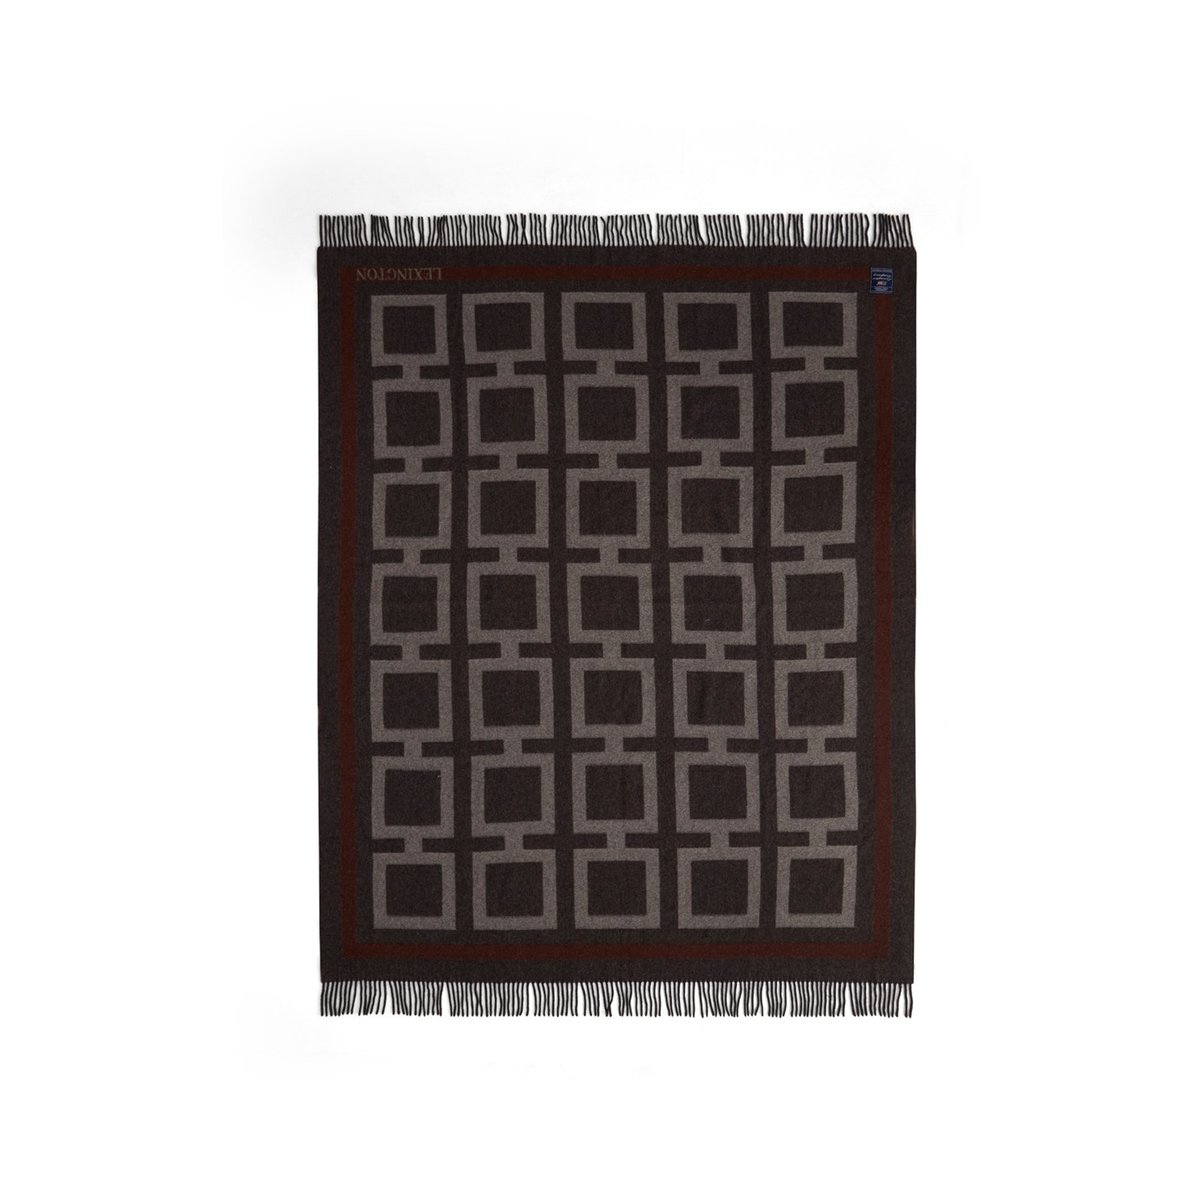 Bilde av Lexington Graphic Recycled Wool pledd 130 x 170 cm Dark gray-white-brown